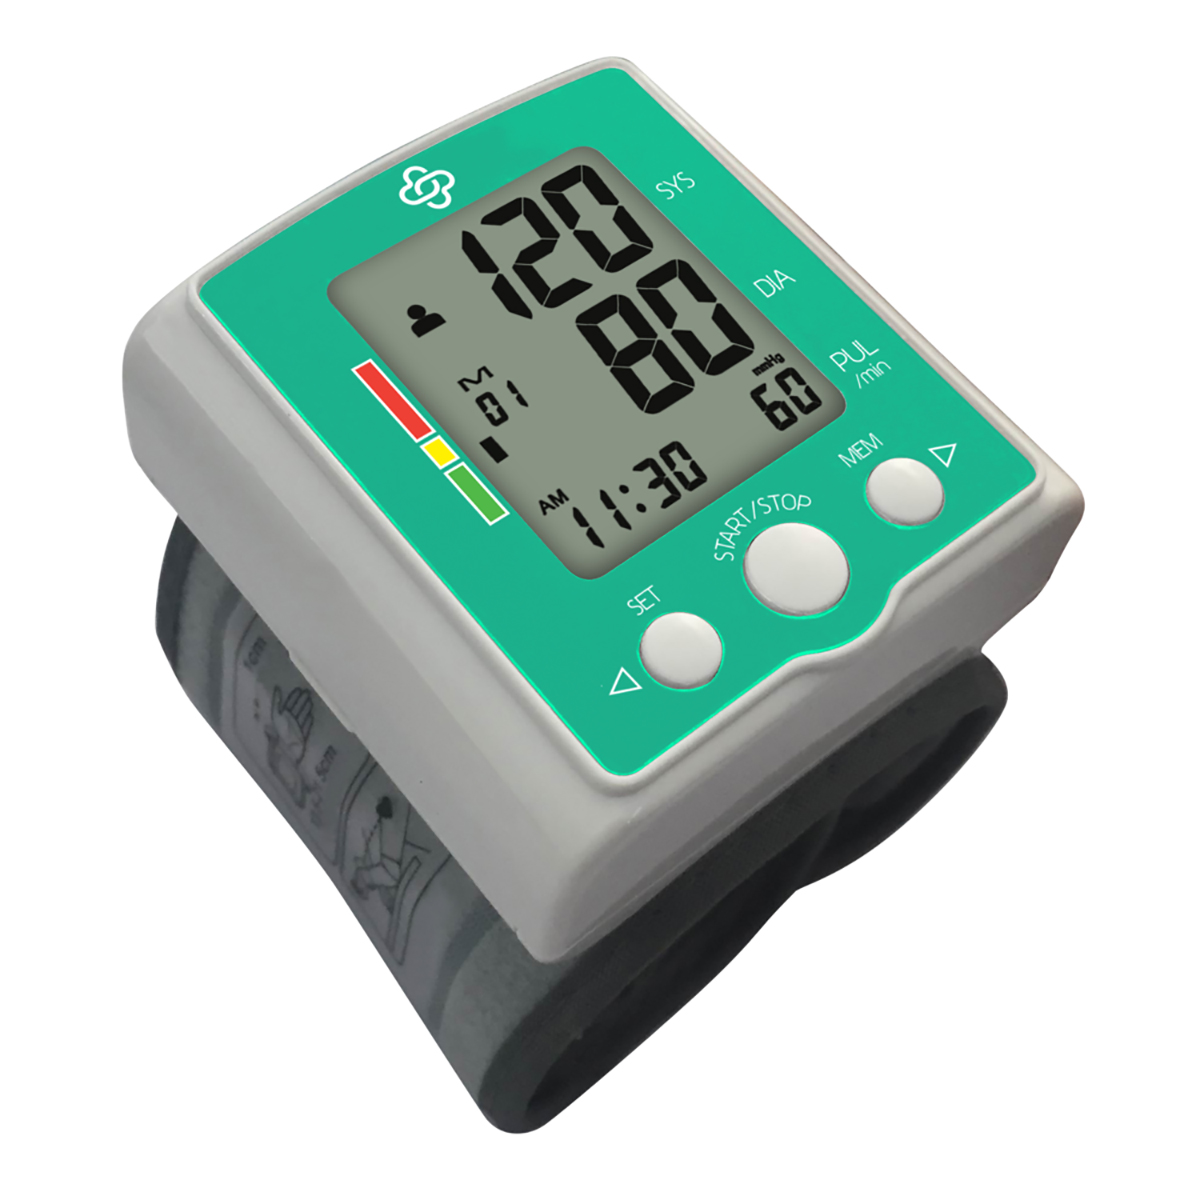 Kinetic Wellbeing Advanced Wrist Blood Pressure Monitor